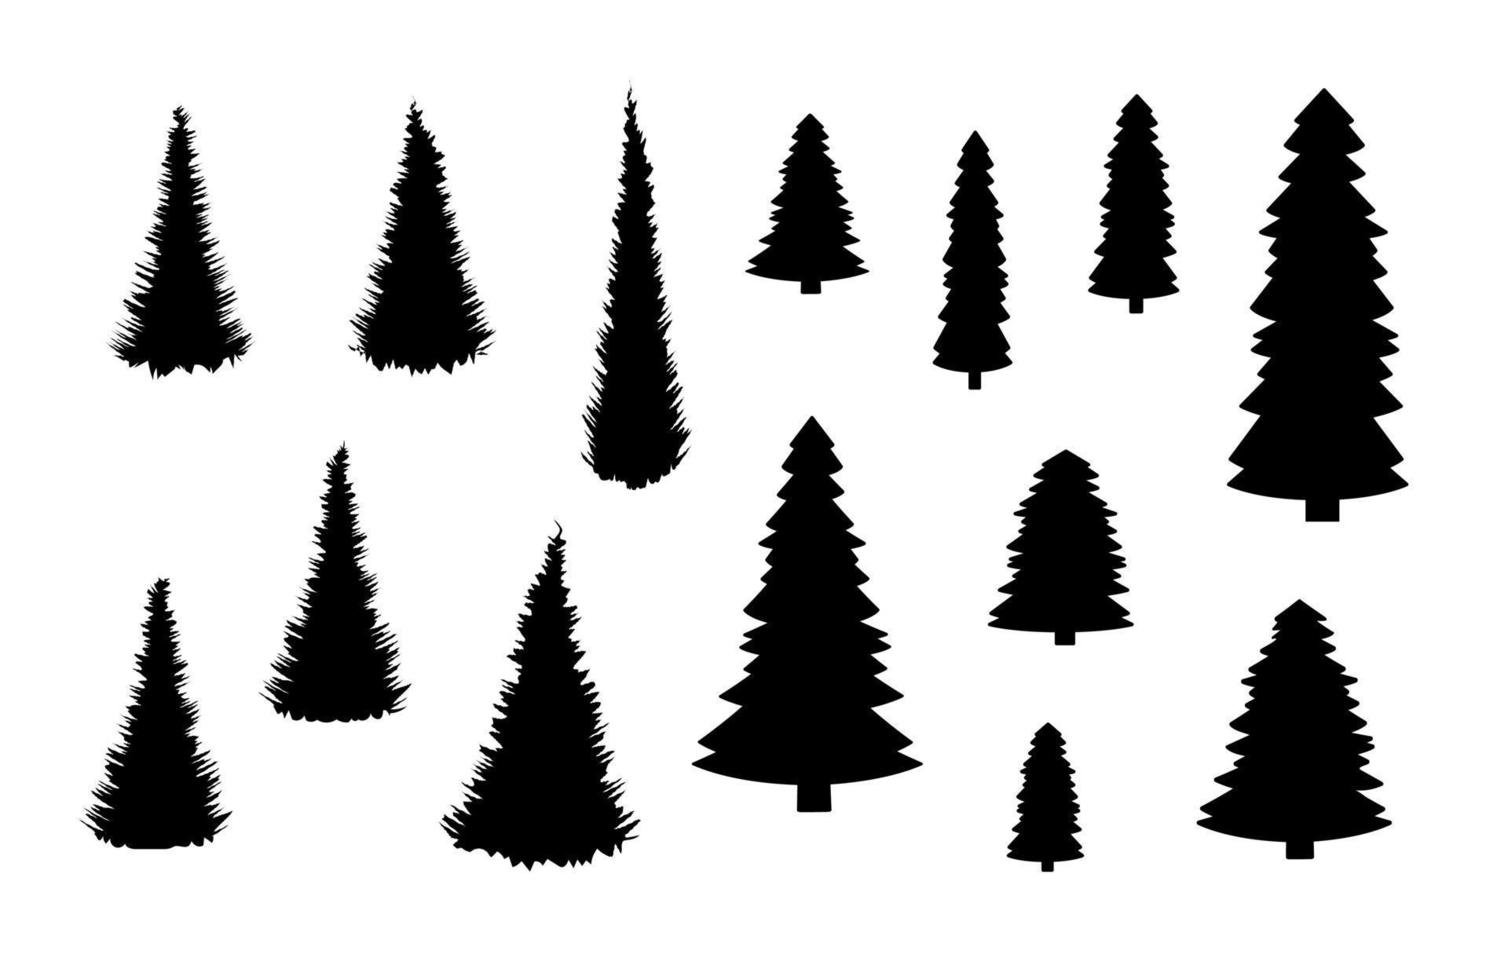 reeks van silhouetten van pijnboom bomen en Spar bomen. vector